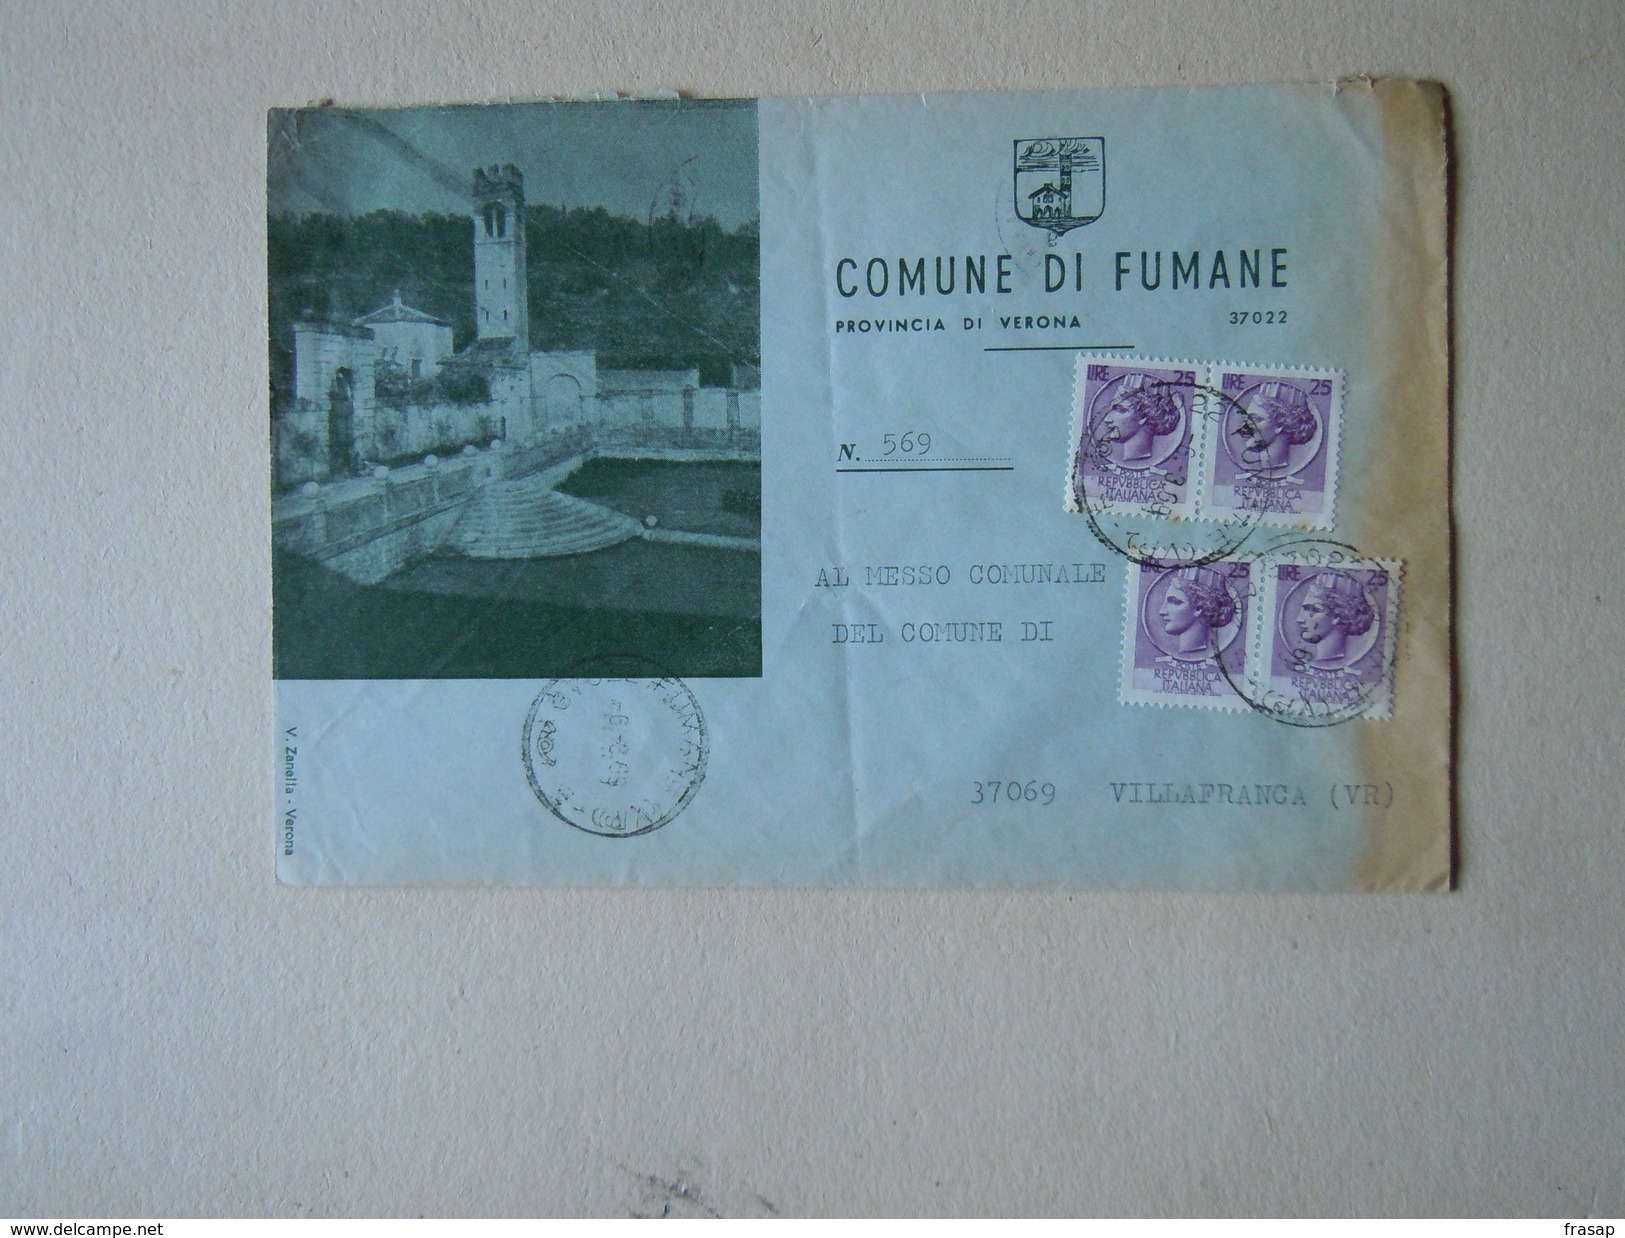 TEMATICA BUSTE COMUNALI - COMUNE DI  FUMANE   N 3 1969 - Buste